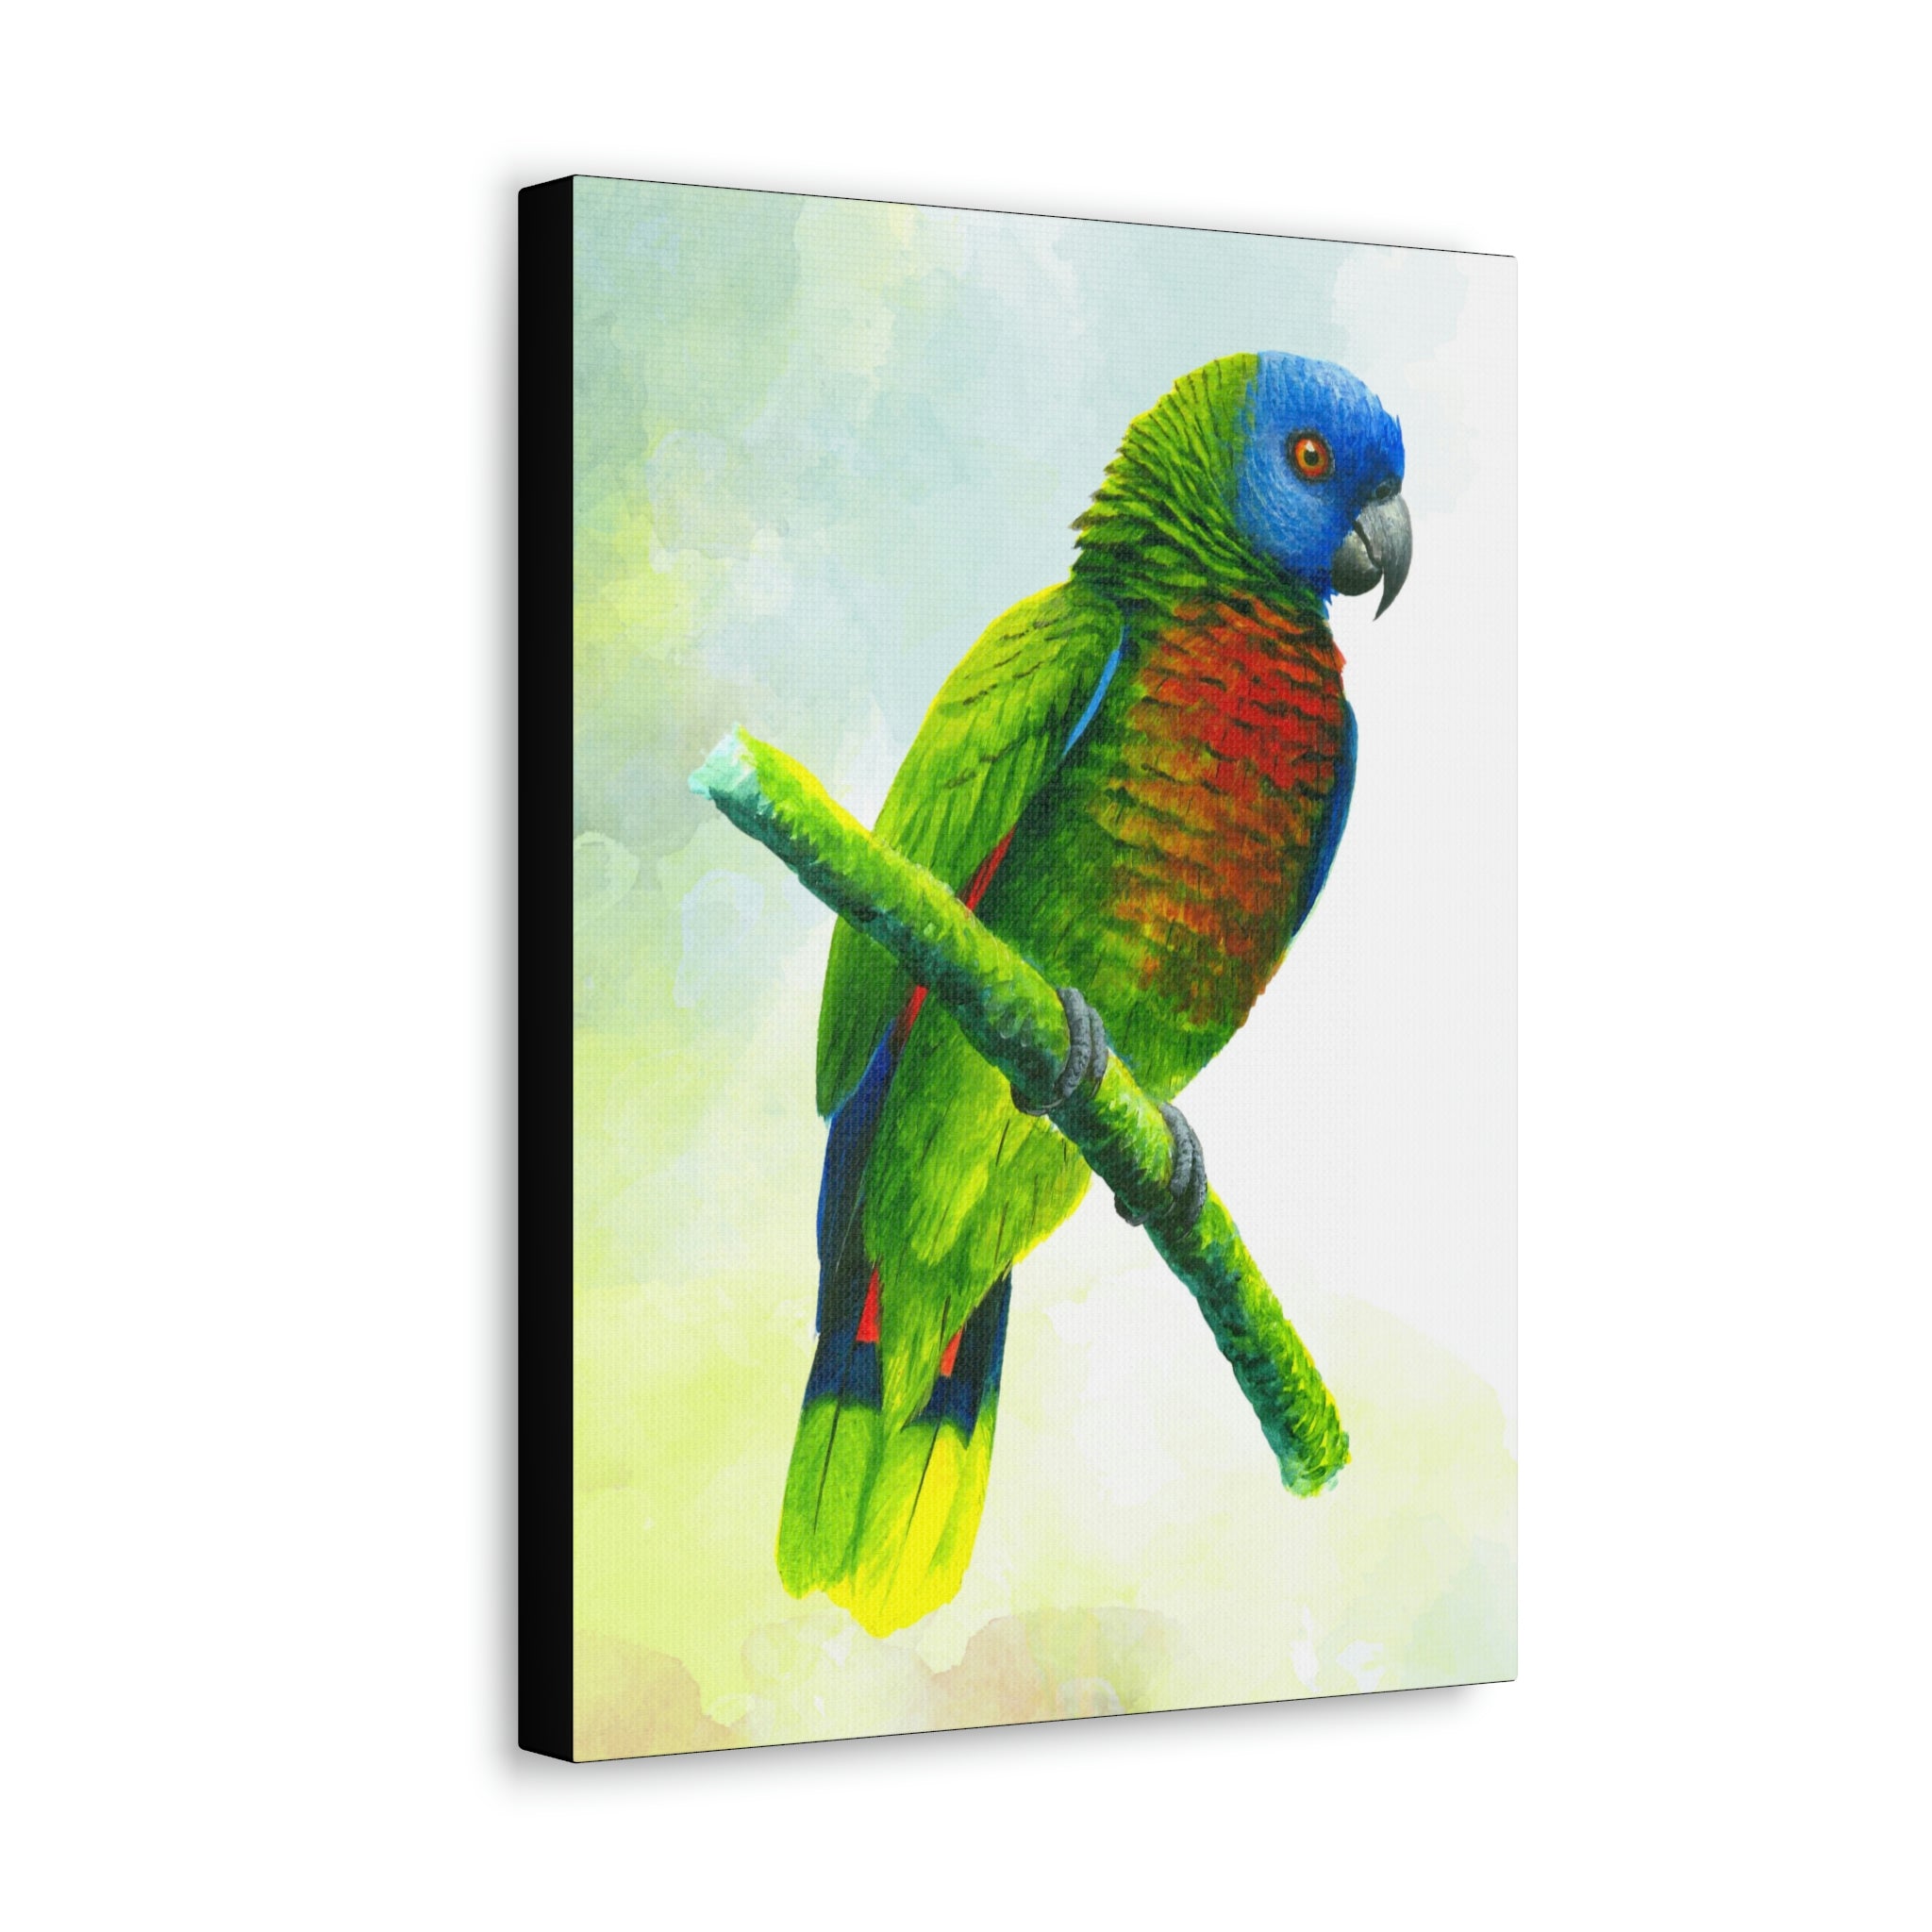 Canvas Wall Art, St Lucia Parrot, Parrot Art, Tropical Bird Art, St Lucian Art, Caribbean Art